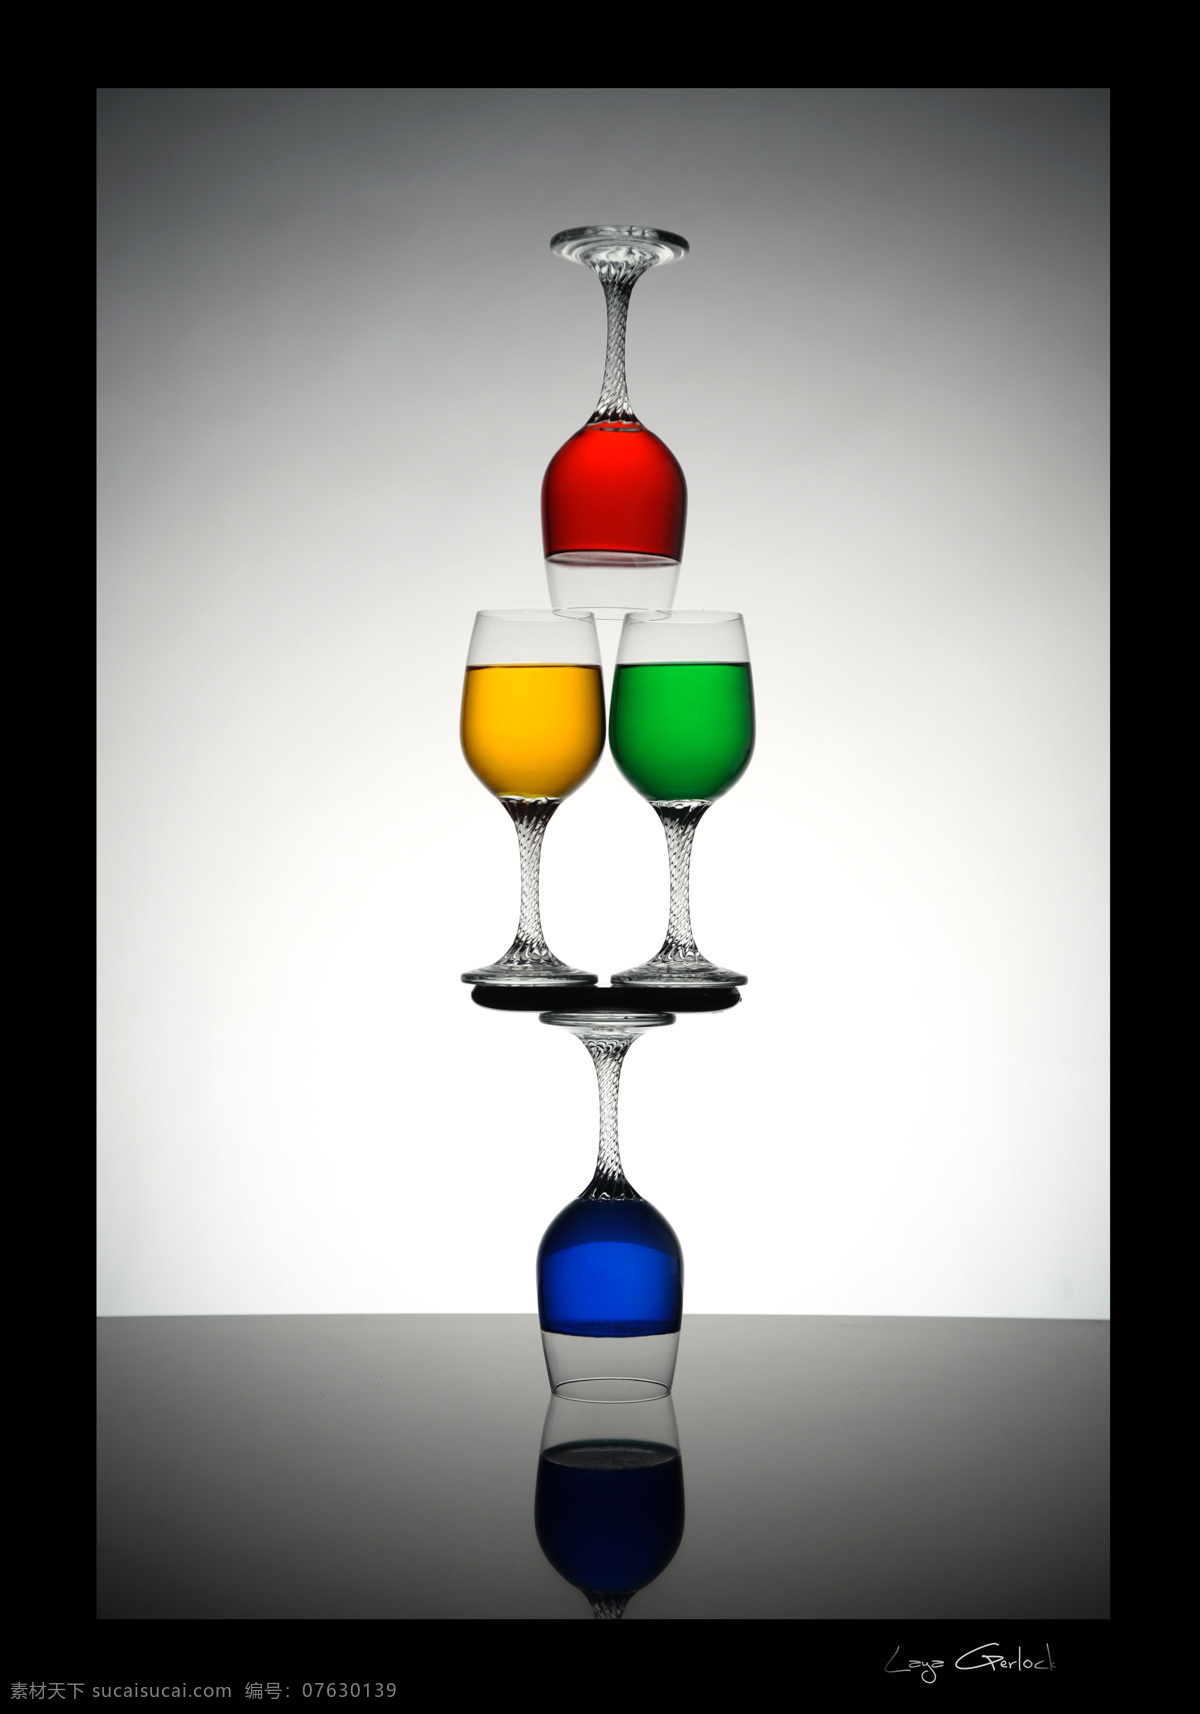 杯子 玻璃杯 红酒 酒杯 葡萄酒 生活百科 生活用品 创意 设计素材 模板下载 创意酒杯 杯具 透明 水杯 psd源文件